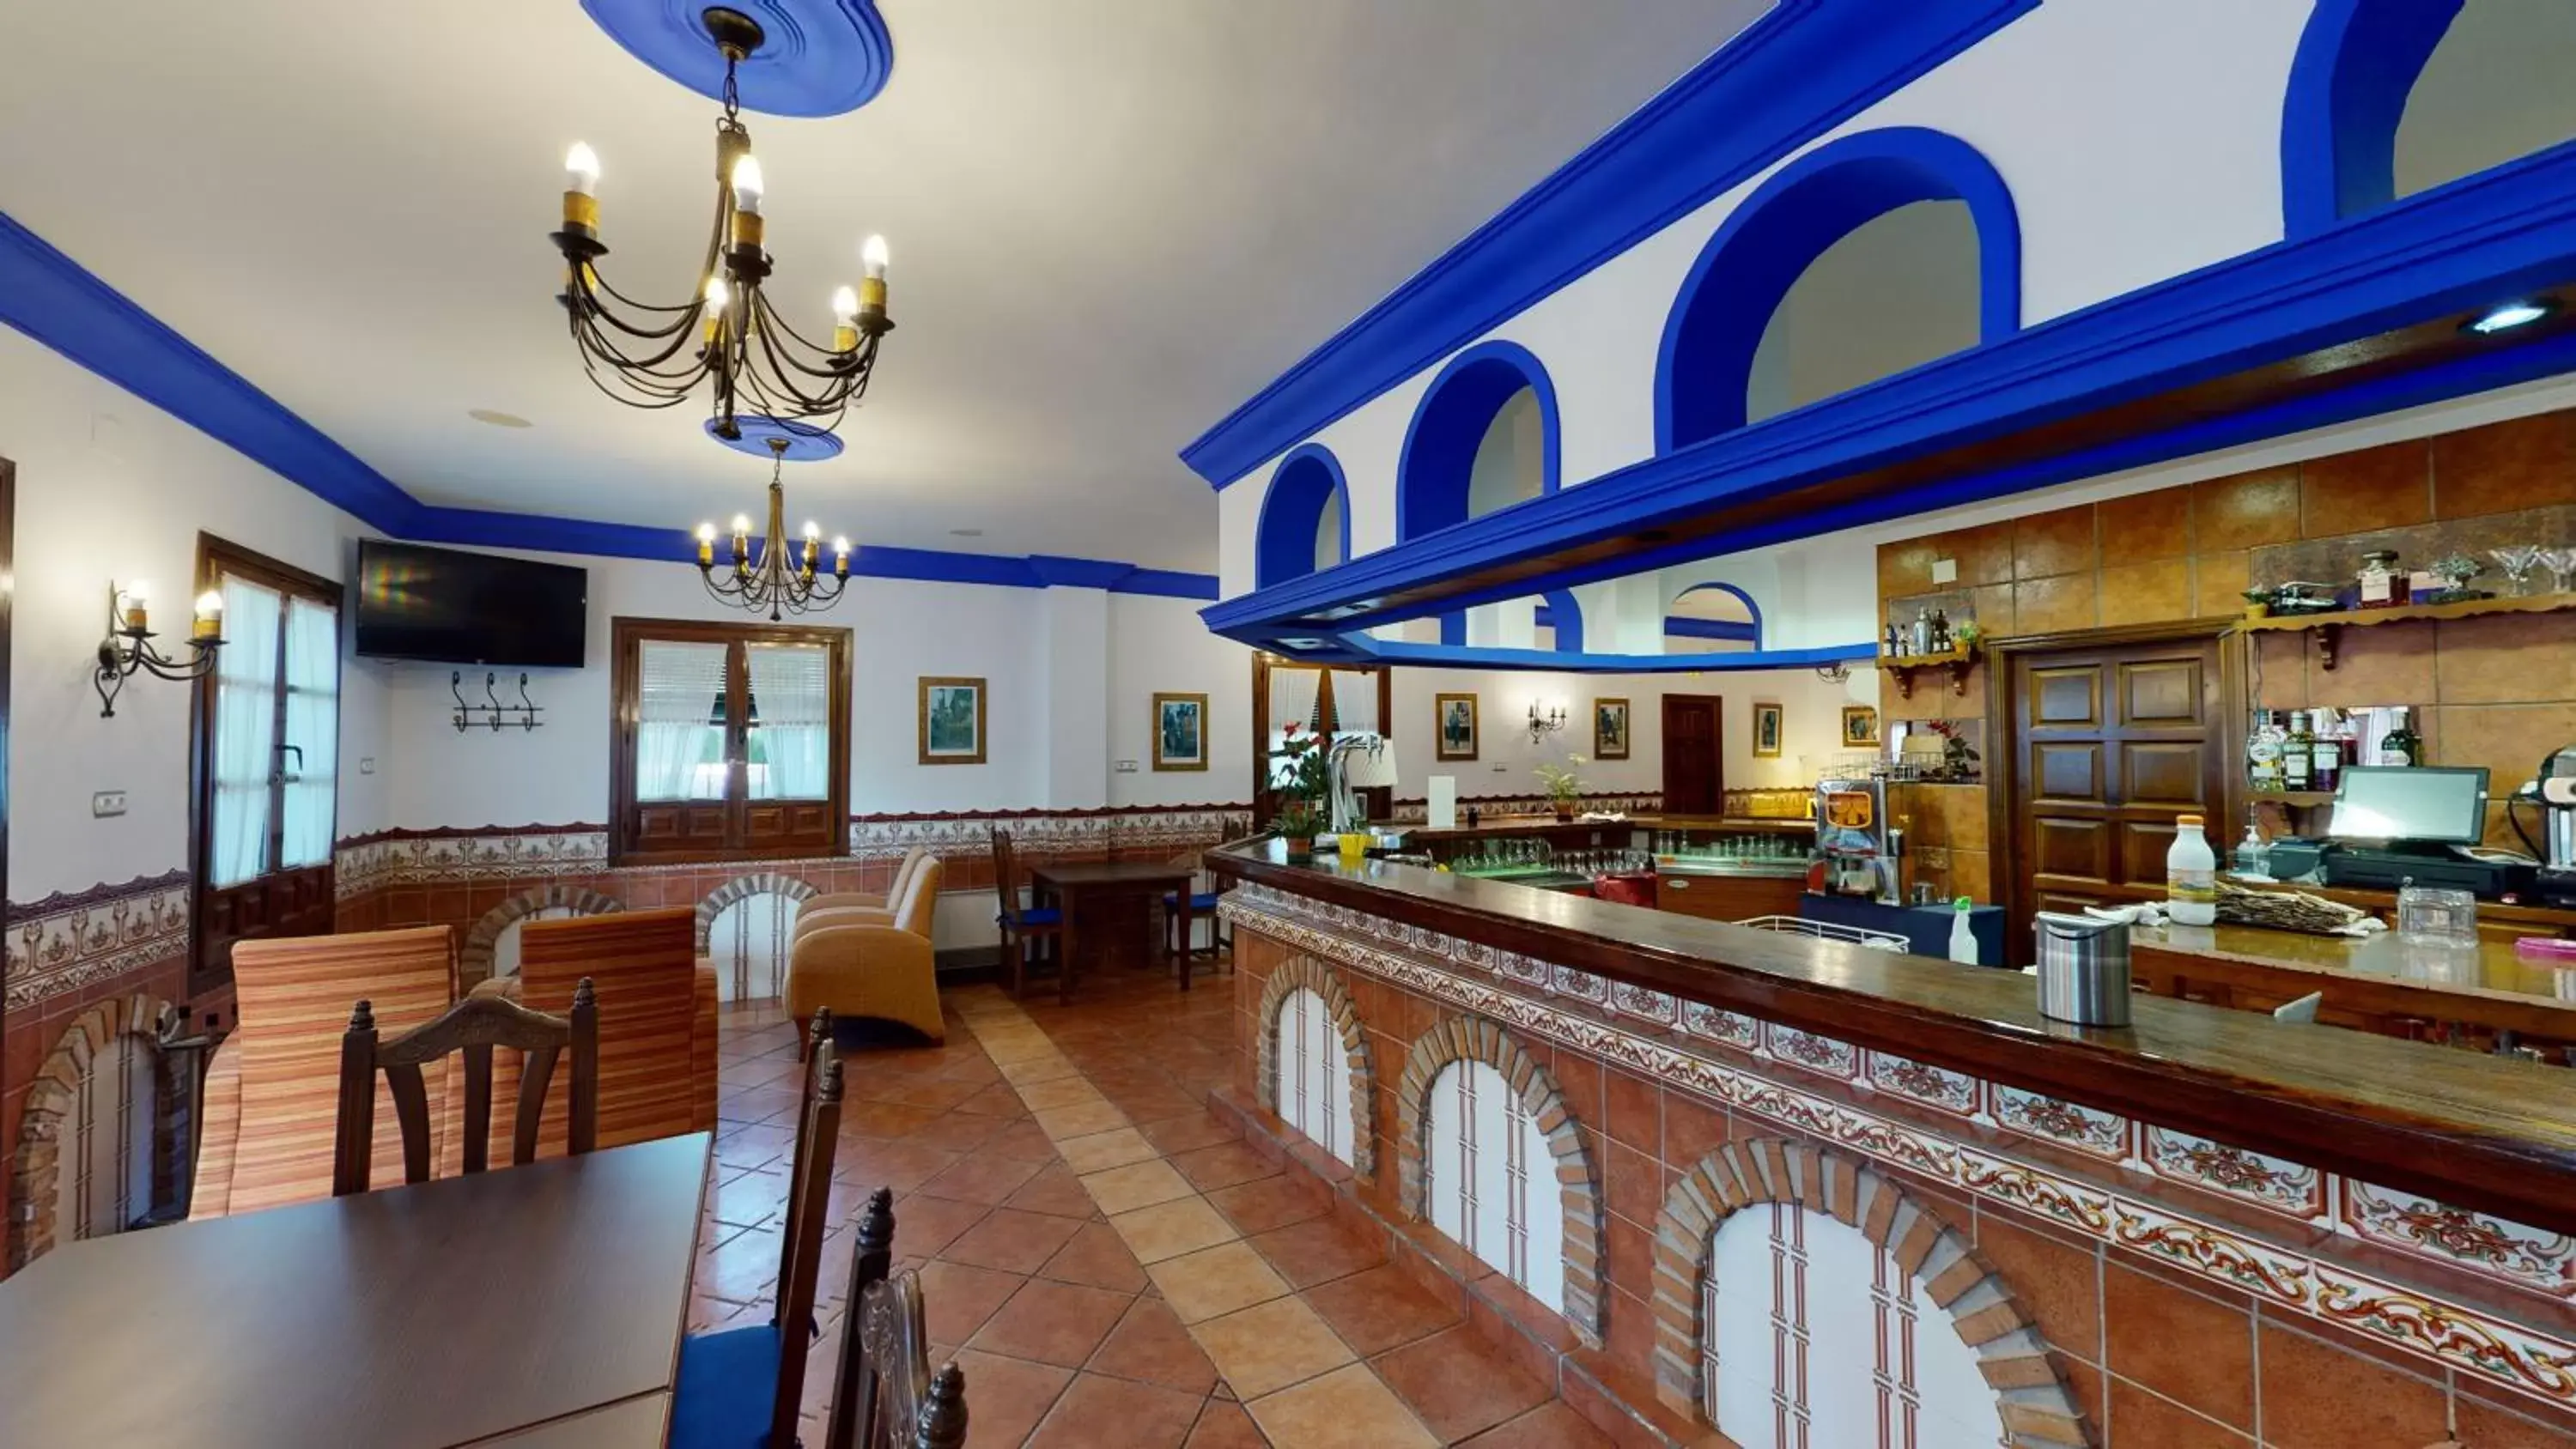 Lounge or bar, Restaurant/Places to Eat in Huerta de las Palomas